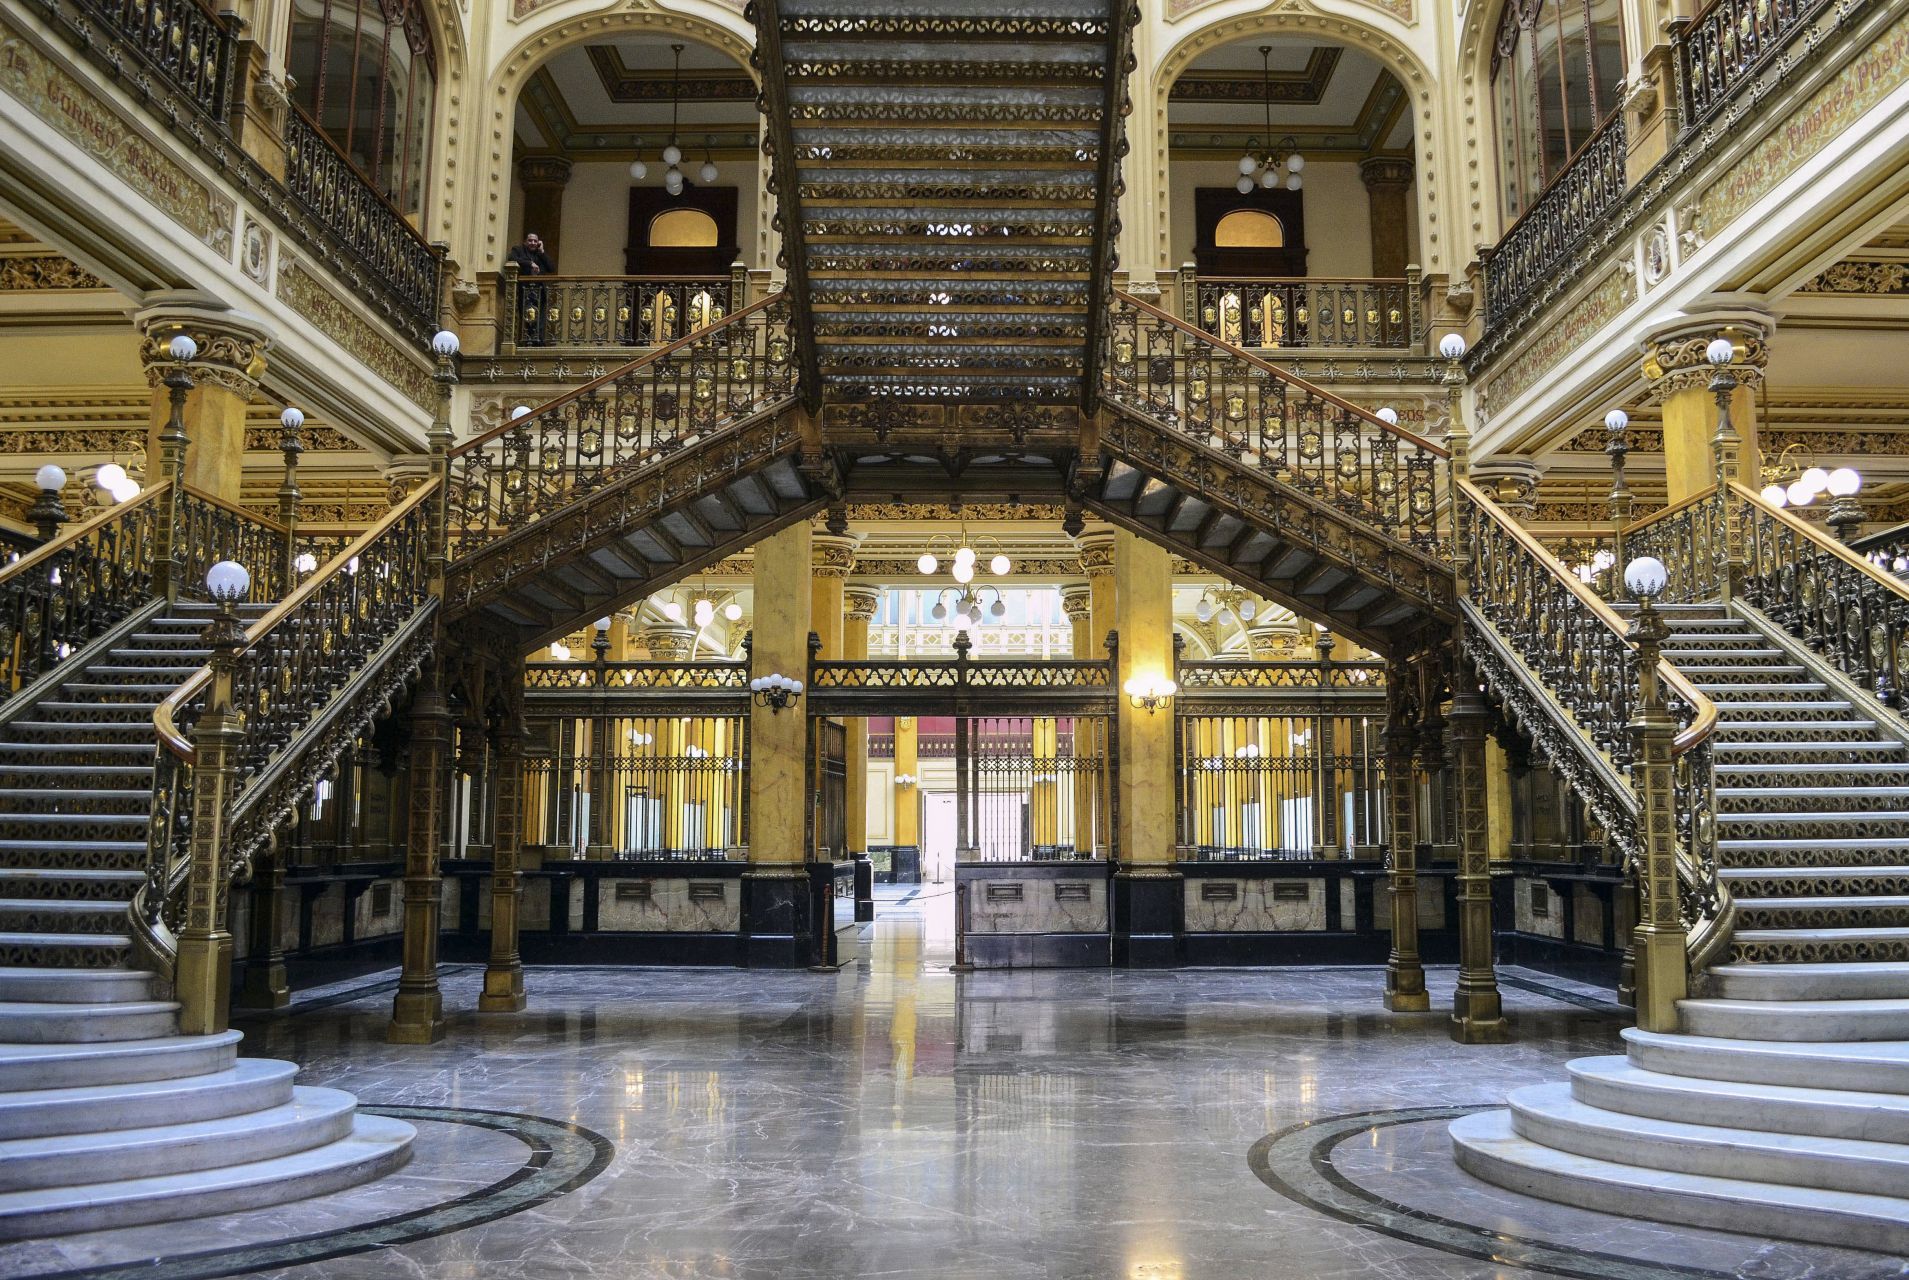 El interior se encuentra enriquecido por estructuras de bronce que fueron elaboradas en Florencia, Italia. (FOTO: CUARTOSCURO.COM)